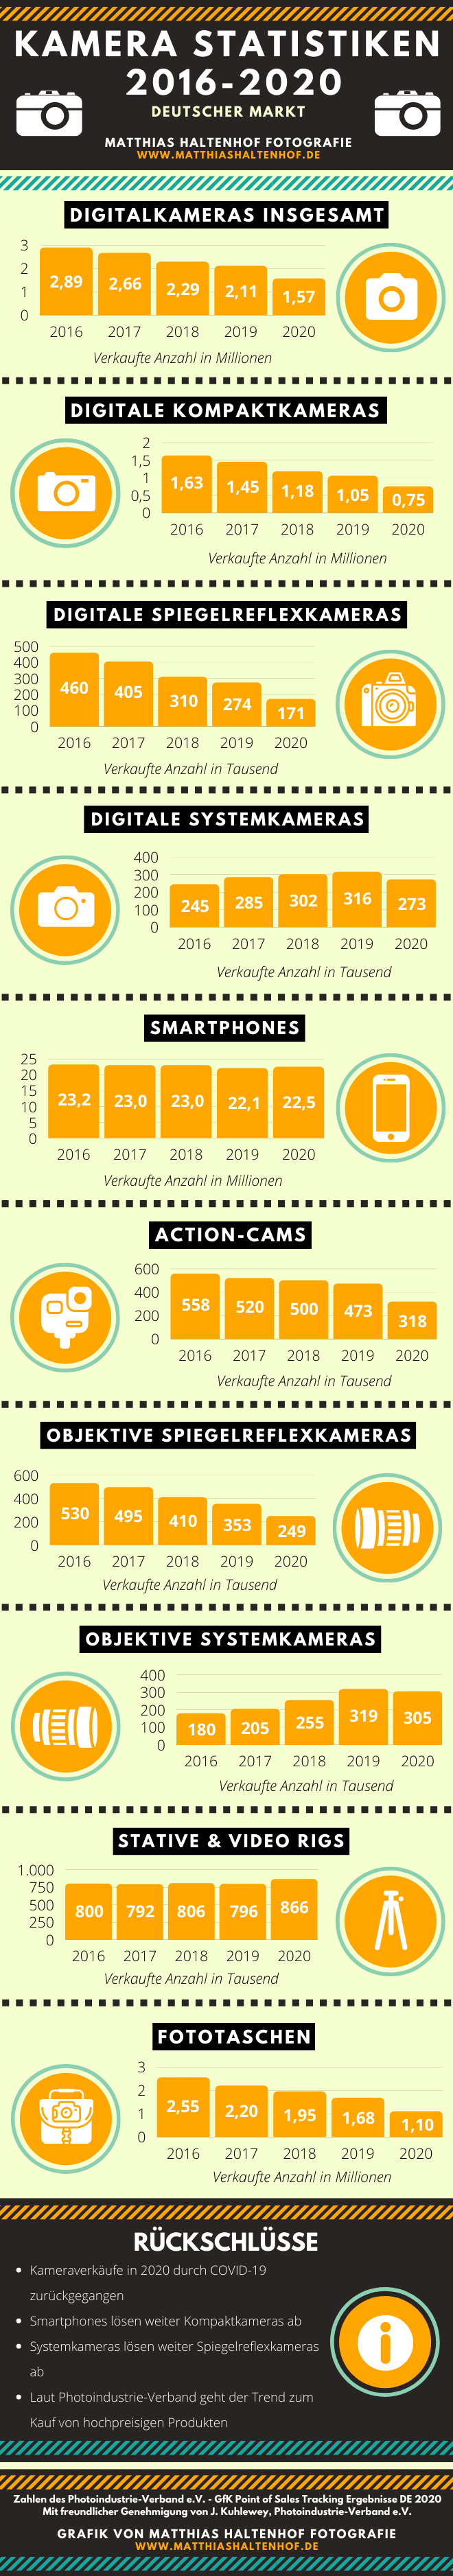 infografik kamera statistiken de 2016 2020 v8 - Kamera-Verkaufszahlen in Deutschland weiter rückläufig